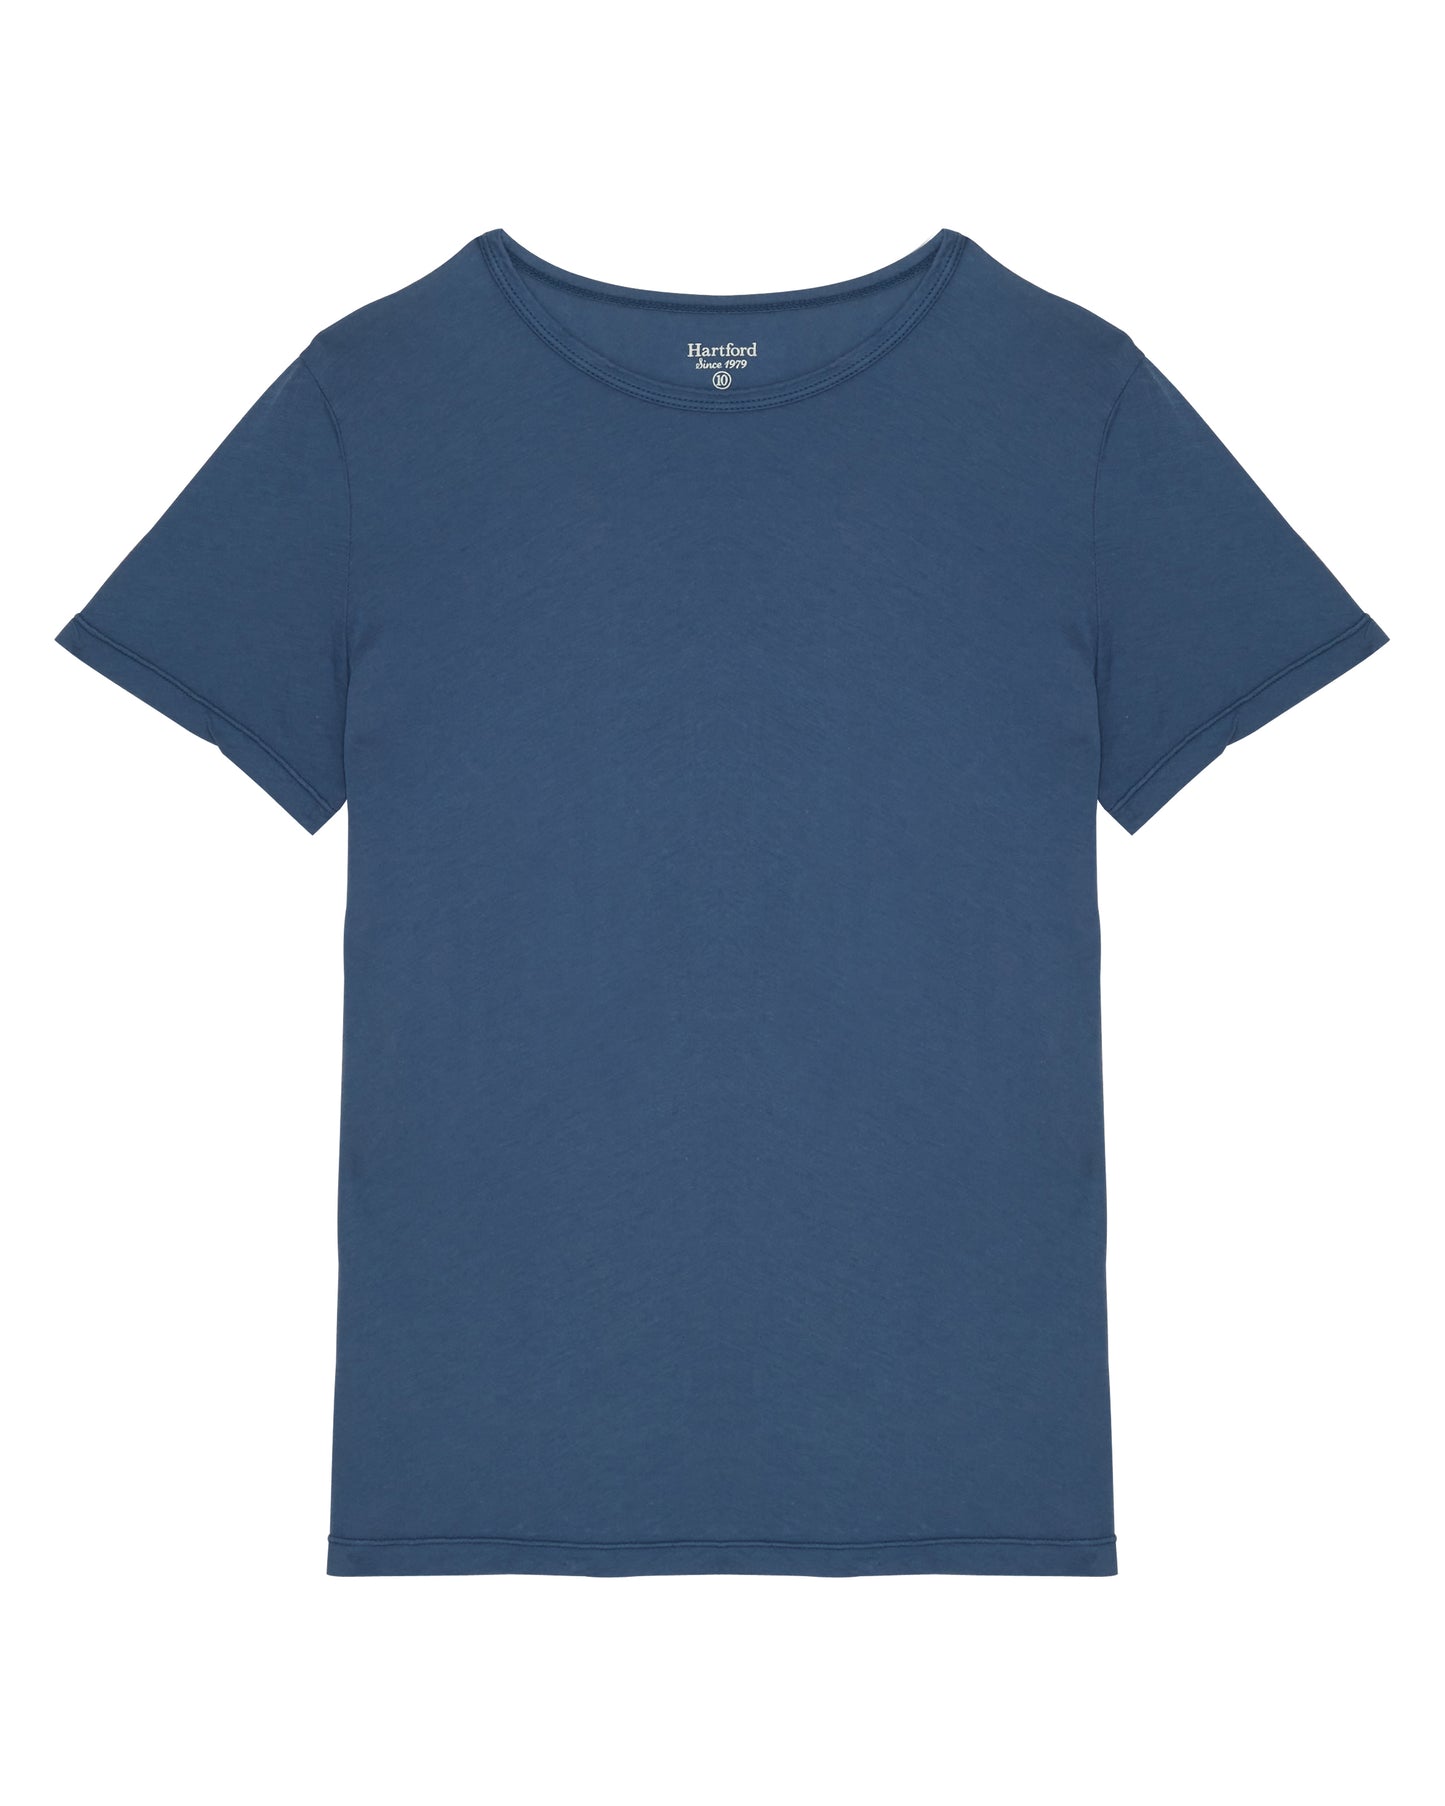 Tee Shirt Garçon en jersey léger Bleu cobalt